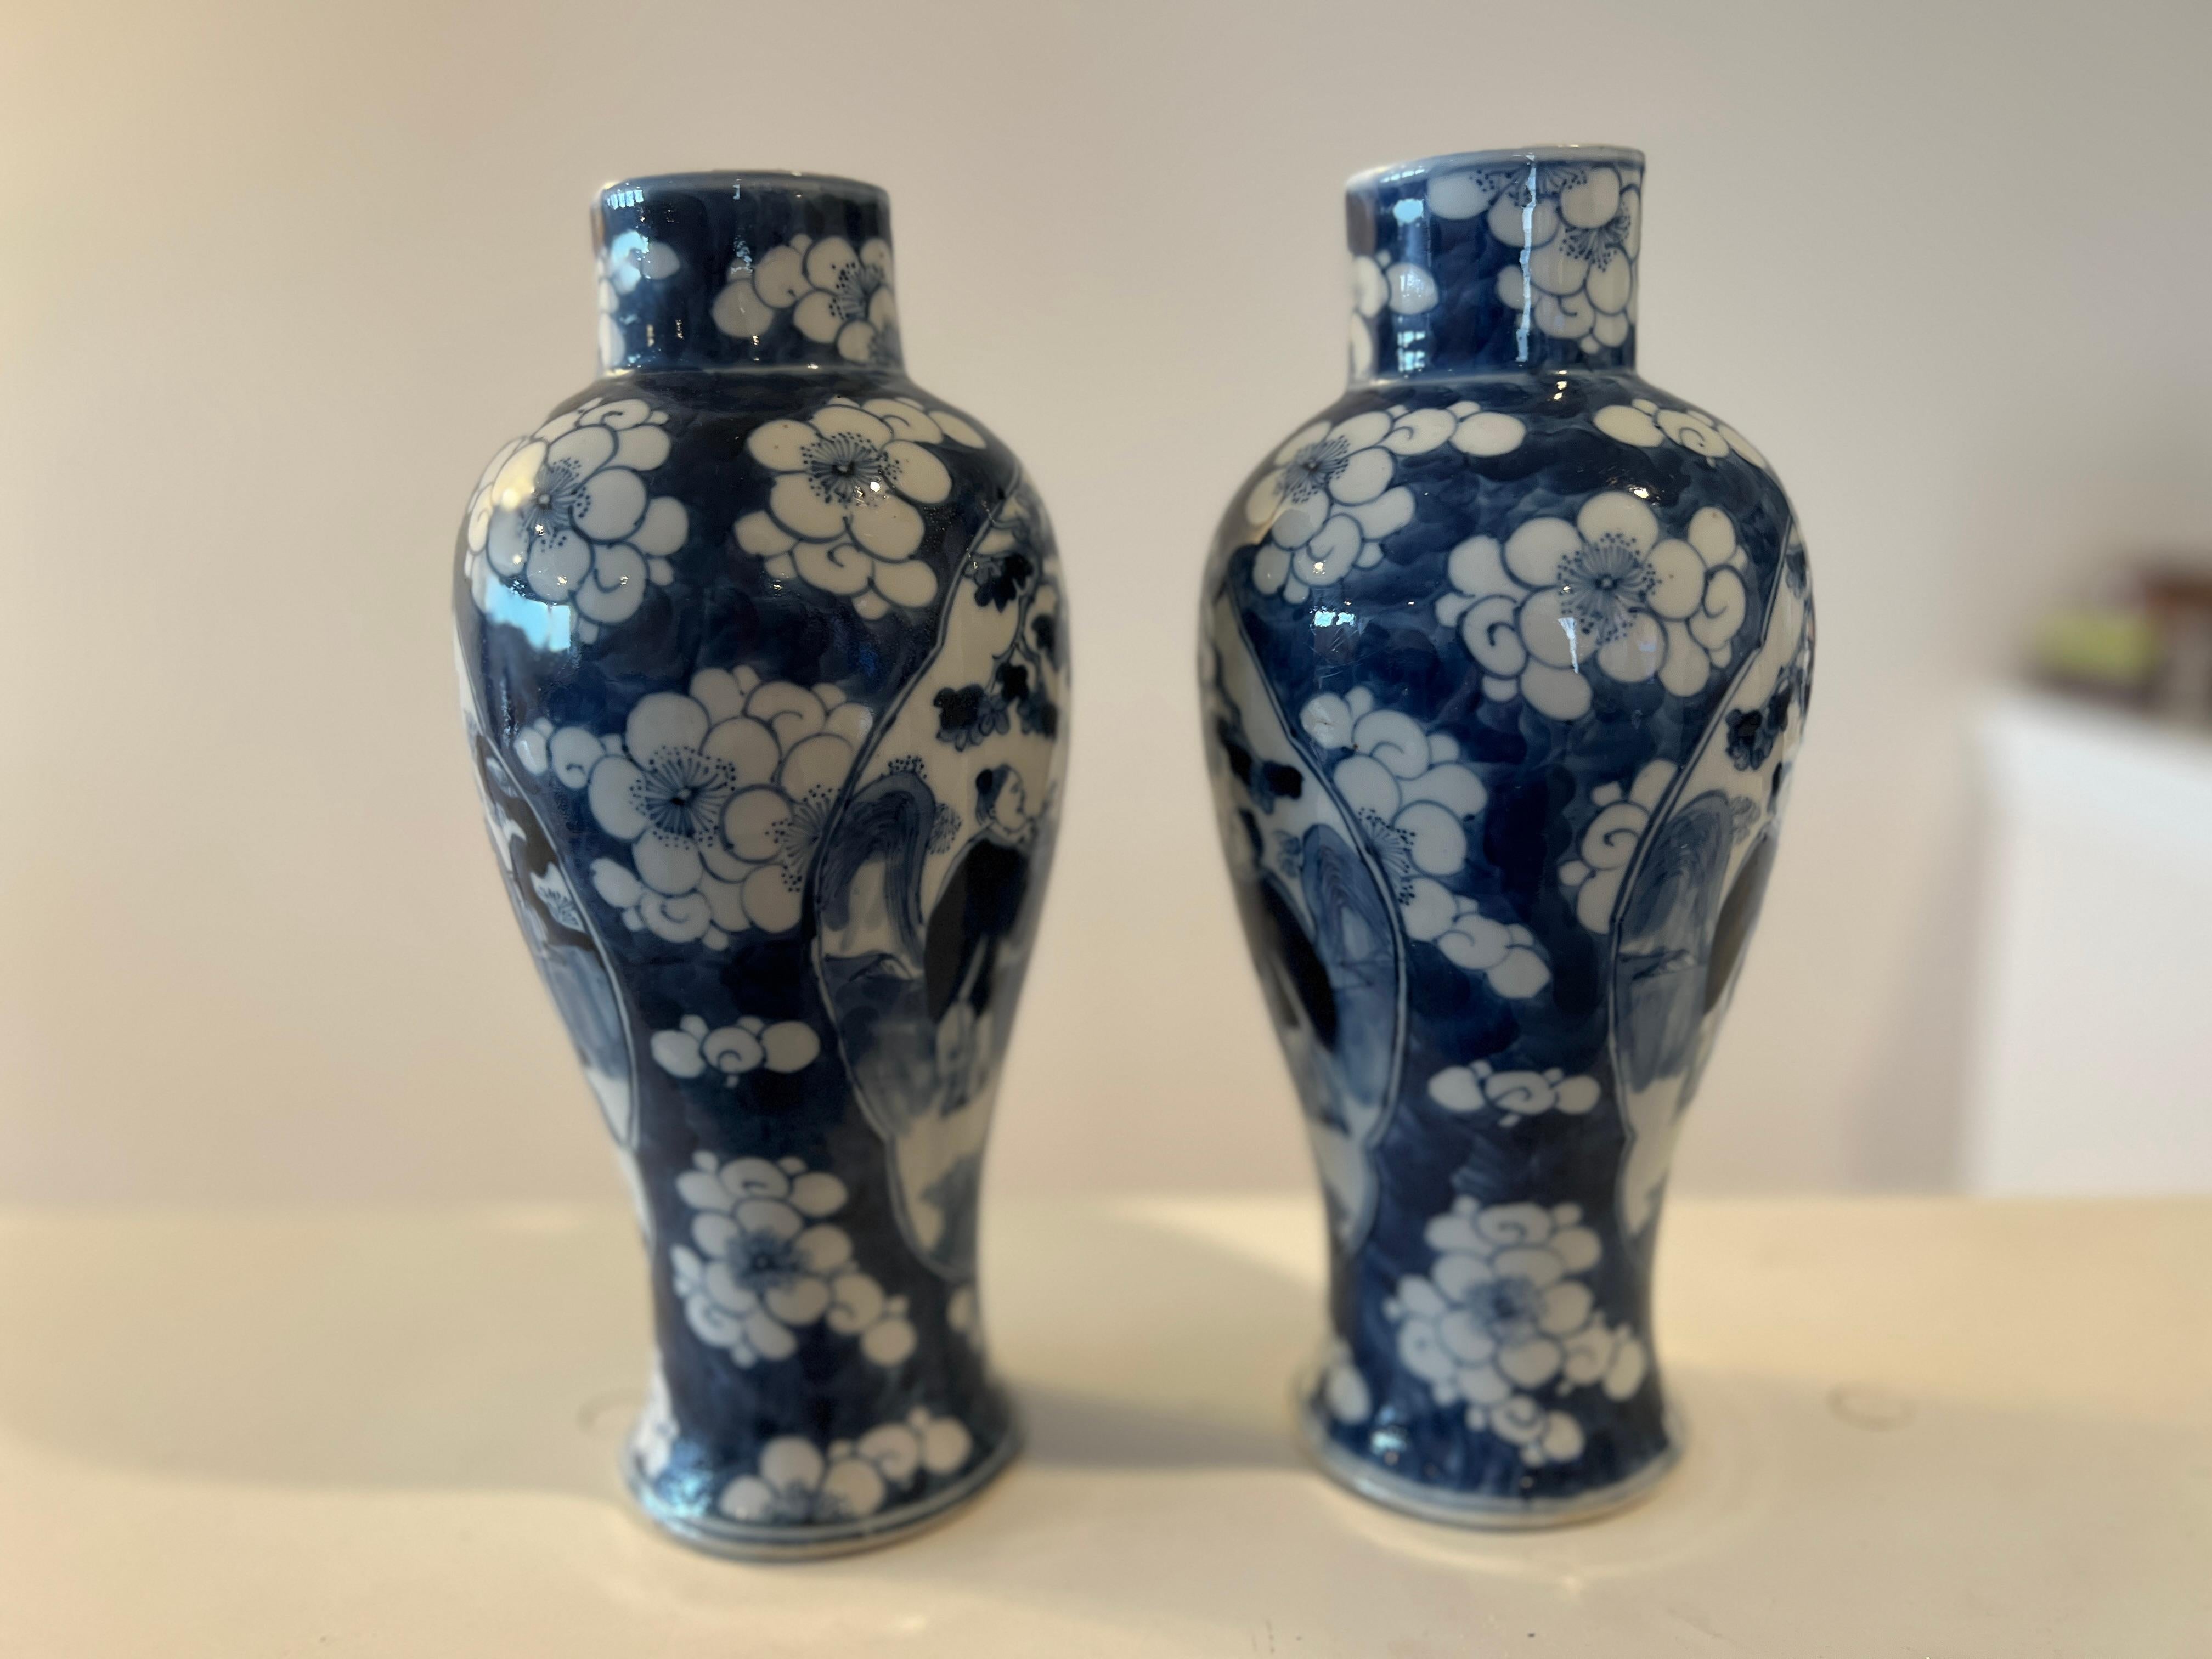 Chinesisch, Hongxian-Periode, um 1915. 

Ein Paar chinesische Exportporzellanvasen mit blau-weißem Blumenmotiv, das zwei figurale Kaiserfenster umgibt. Auf der Unterseite mit Wachssiegel und Hongxian-Marke gekennzeichnet. 